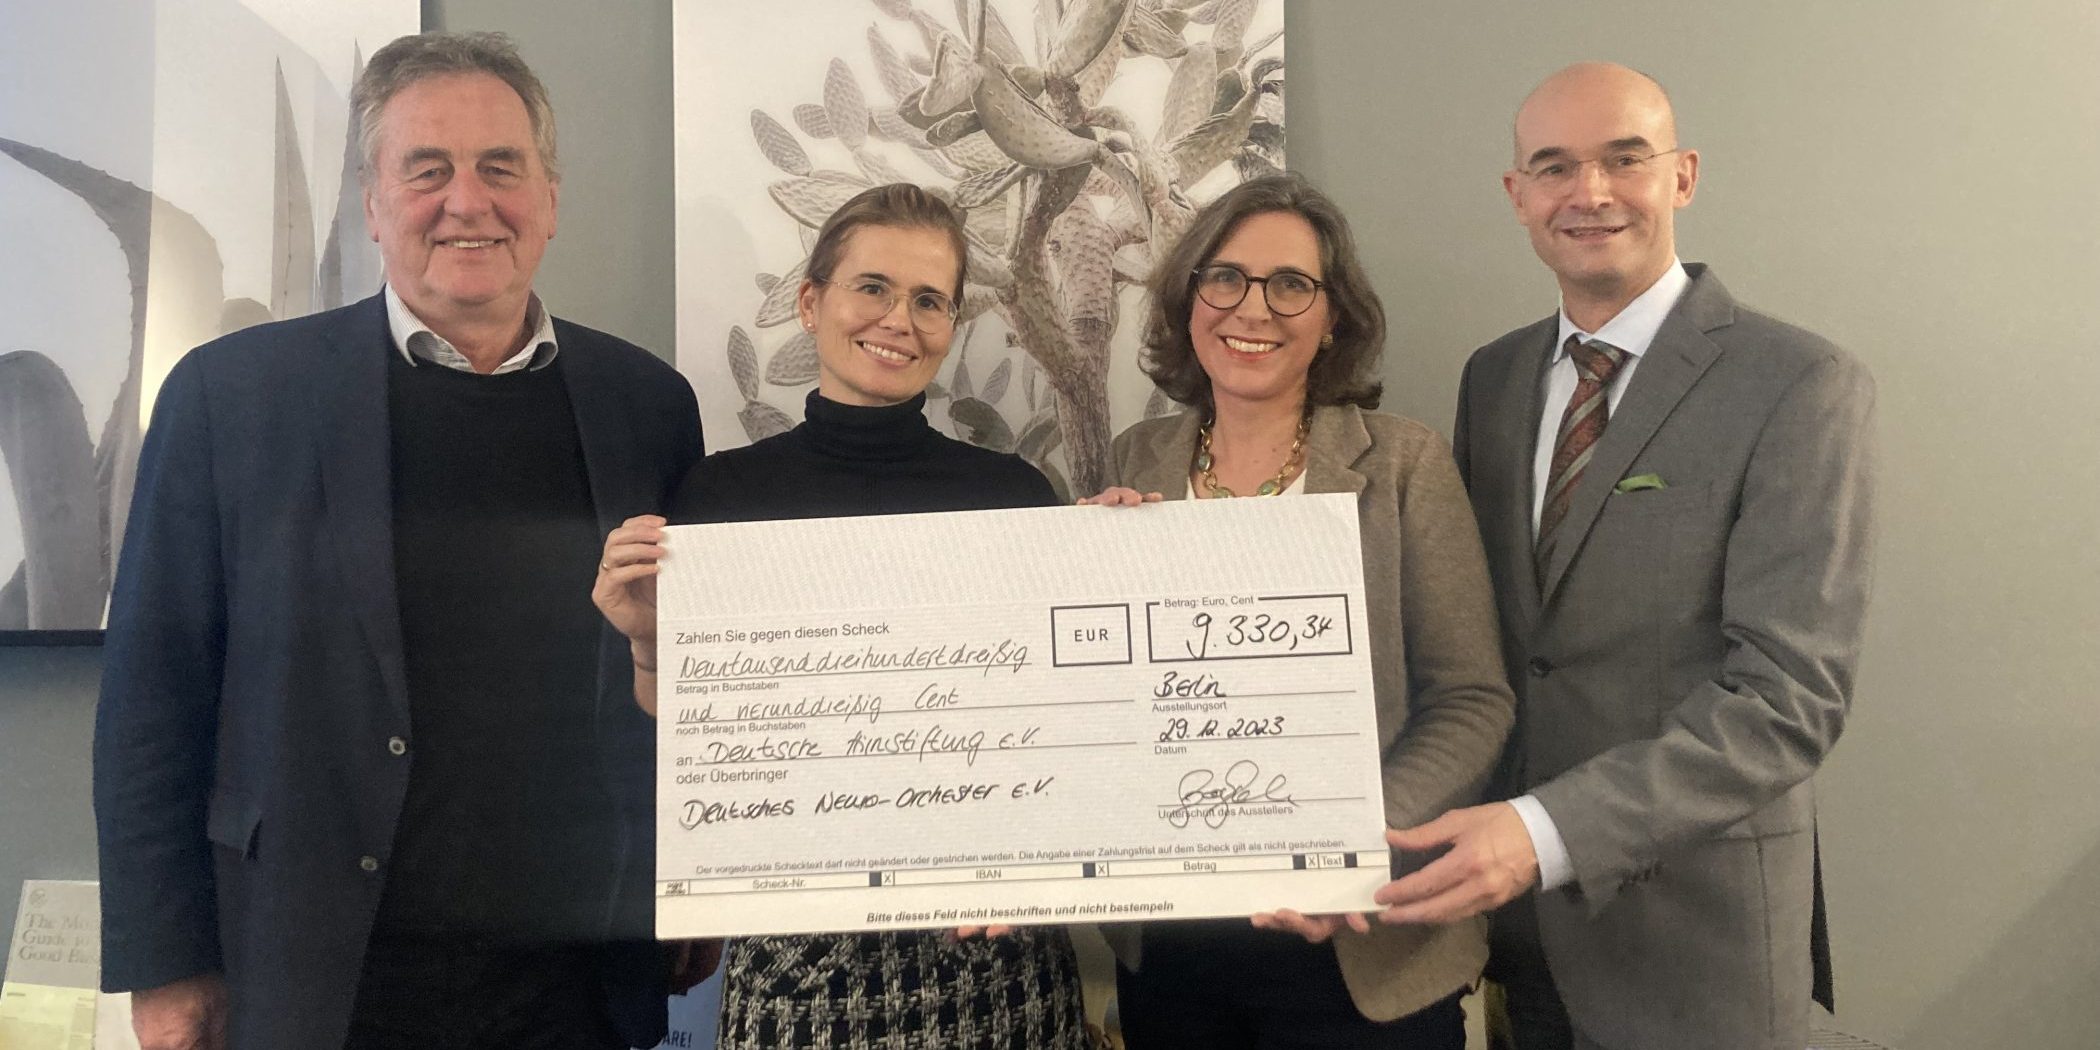 Deutsches Neuro-Orchester spendet über 9.000 Euro